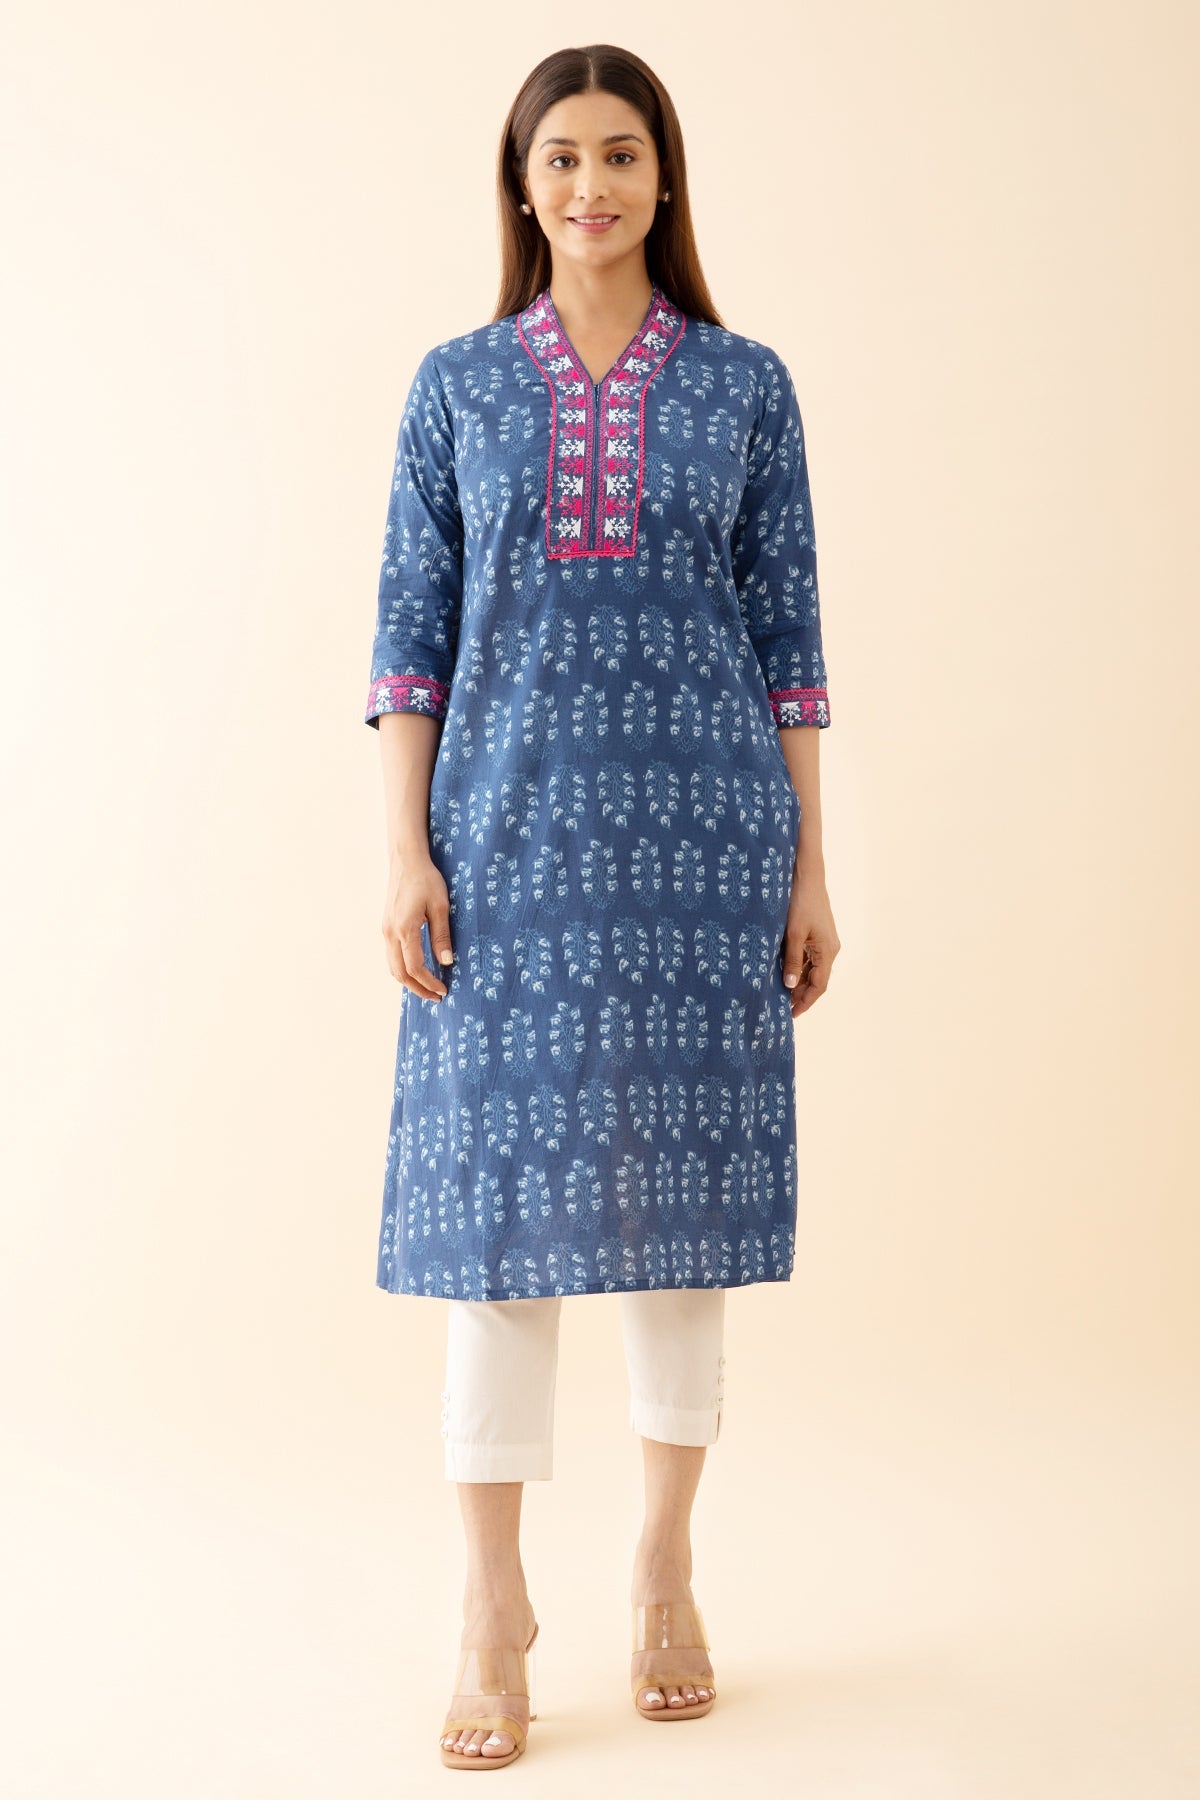 Indigo Printed Kurta with Embroidered & Lace Embellished Neckline - Blue